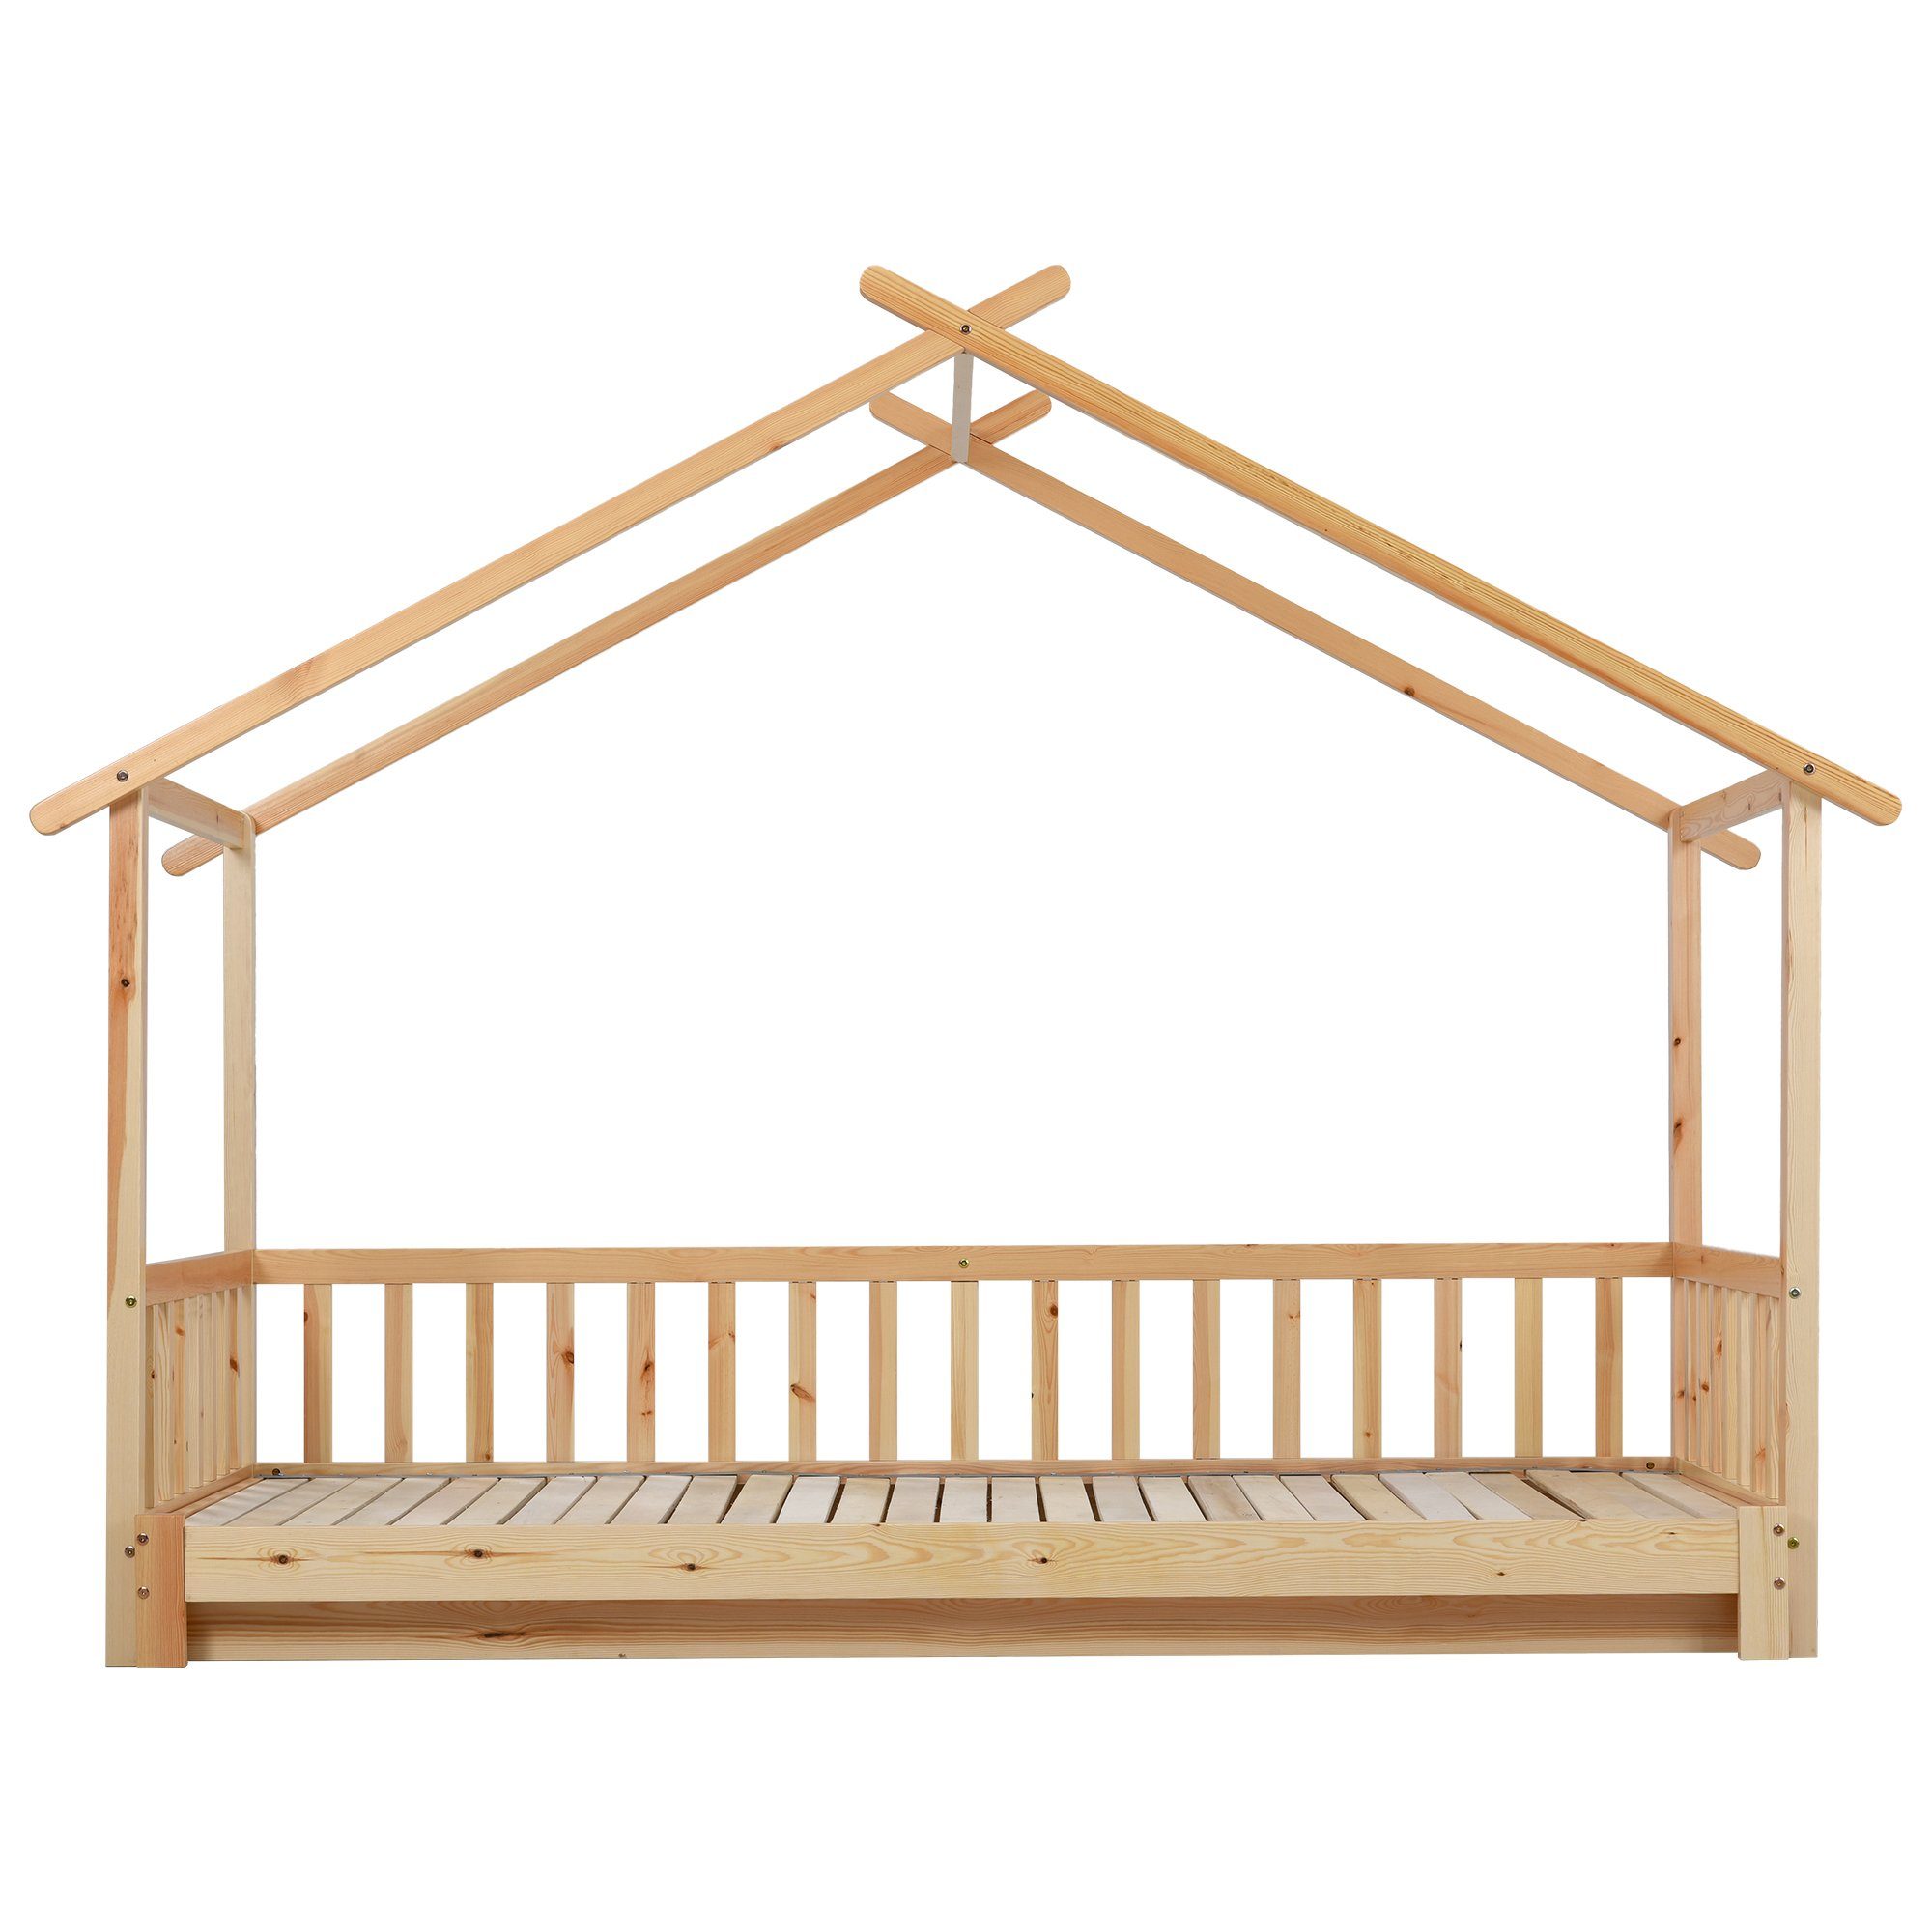 HAUSS SPLOE Bett Hausbett enthält Ohne Bett Erweiterbares Bettrahmen Holzbett Matratze keine Matratze), Kinderbett (Das Baumhausbett